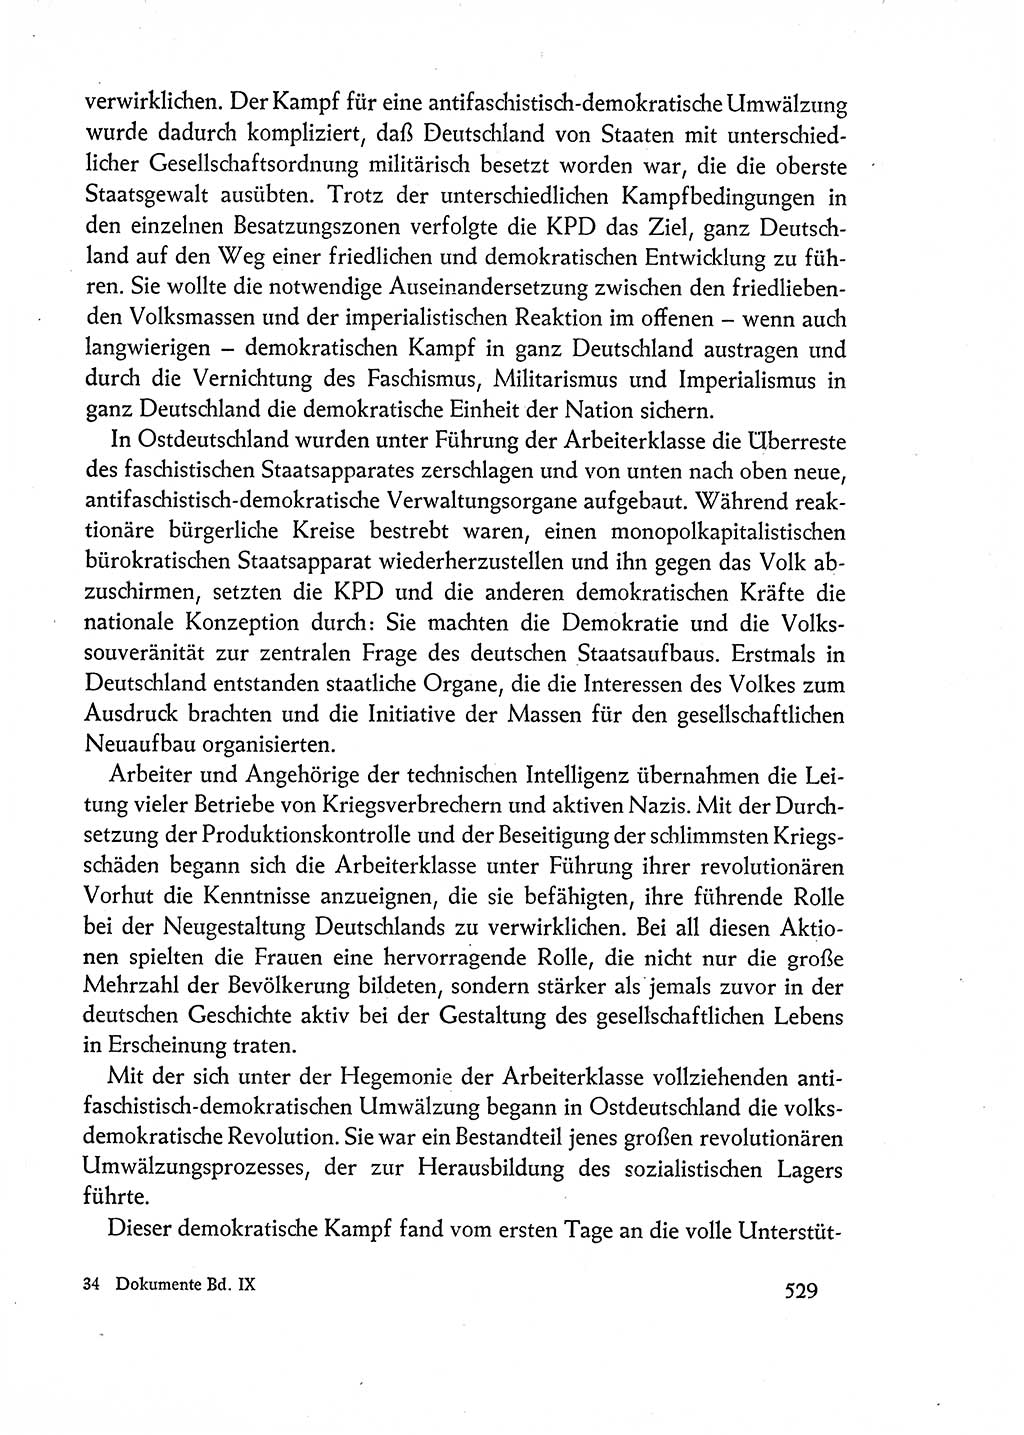 Dokumente der Sozialistischen Einheitspartei Deutschlands (SED) [Deutsche Demokratische Republik (DDR)] 1962-1963, Seite 529 (Dok. SED DDR 1962-1963, S. 529)